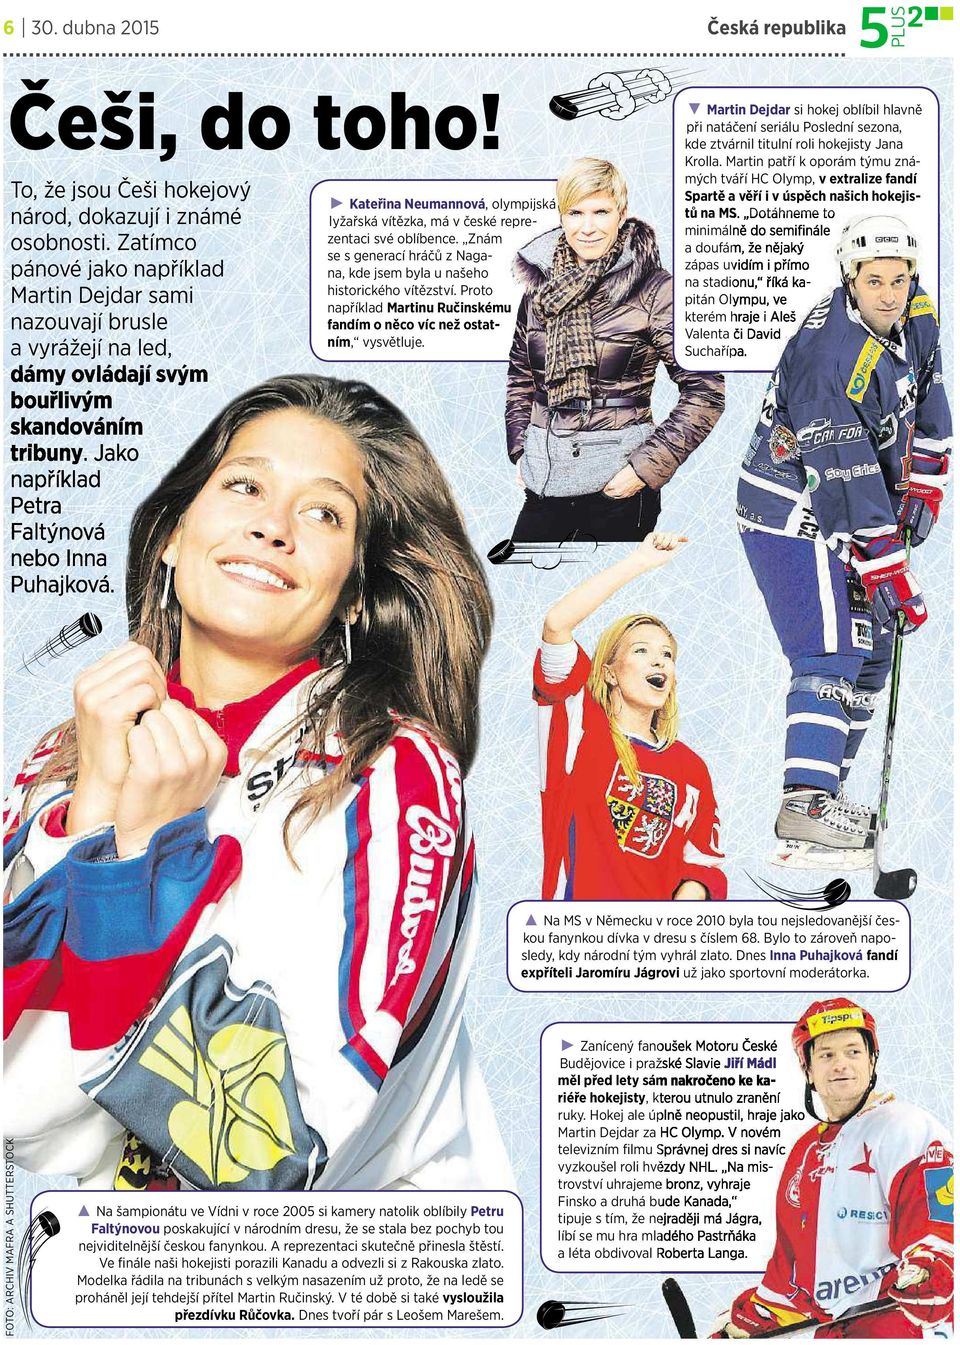 Kateřina Neumannová,olympijská lyžařská vítězka, mávčeské reprezentaci své oblíbence. Znám se sgenerací hráčů znagana, kde jsem byla unašeho historického vítězství.